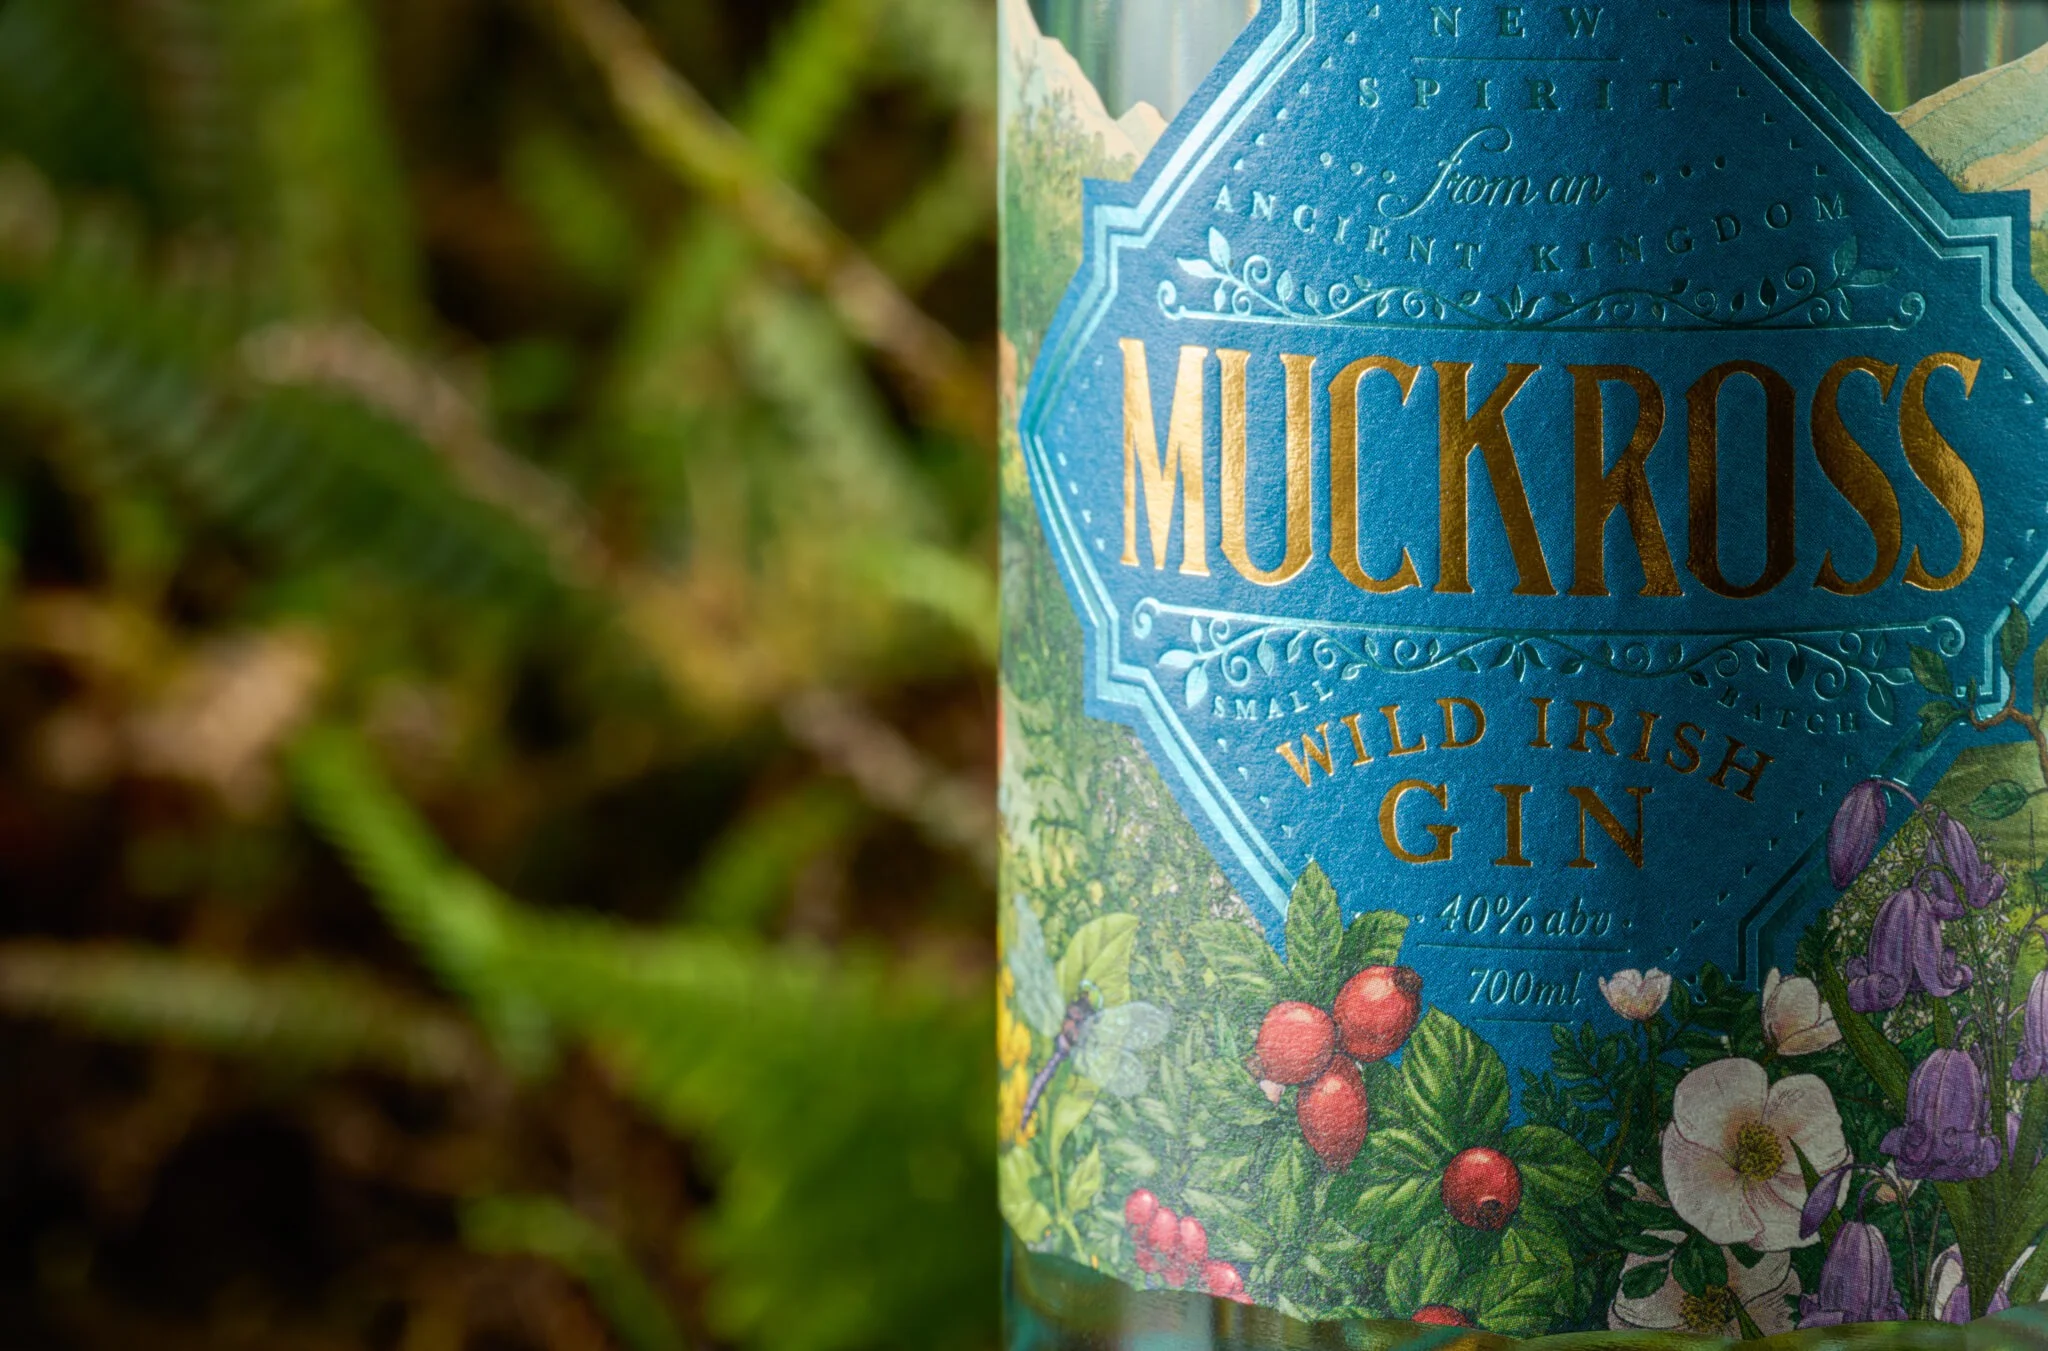 Muckross Wild Irish Gin Label